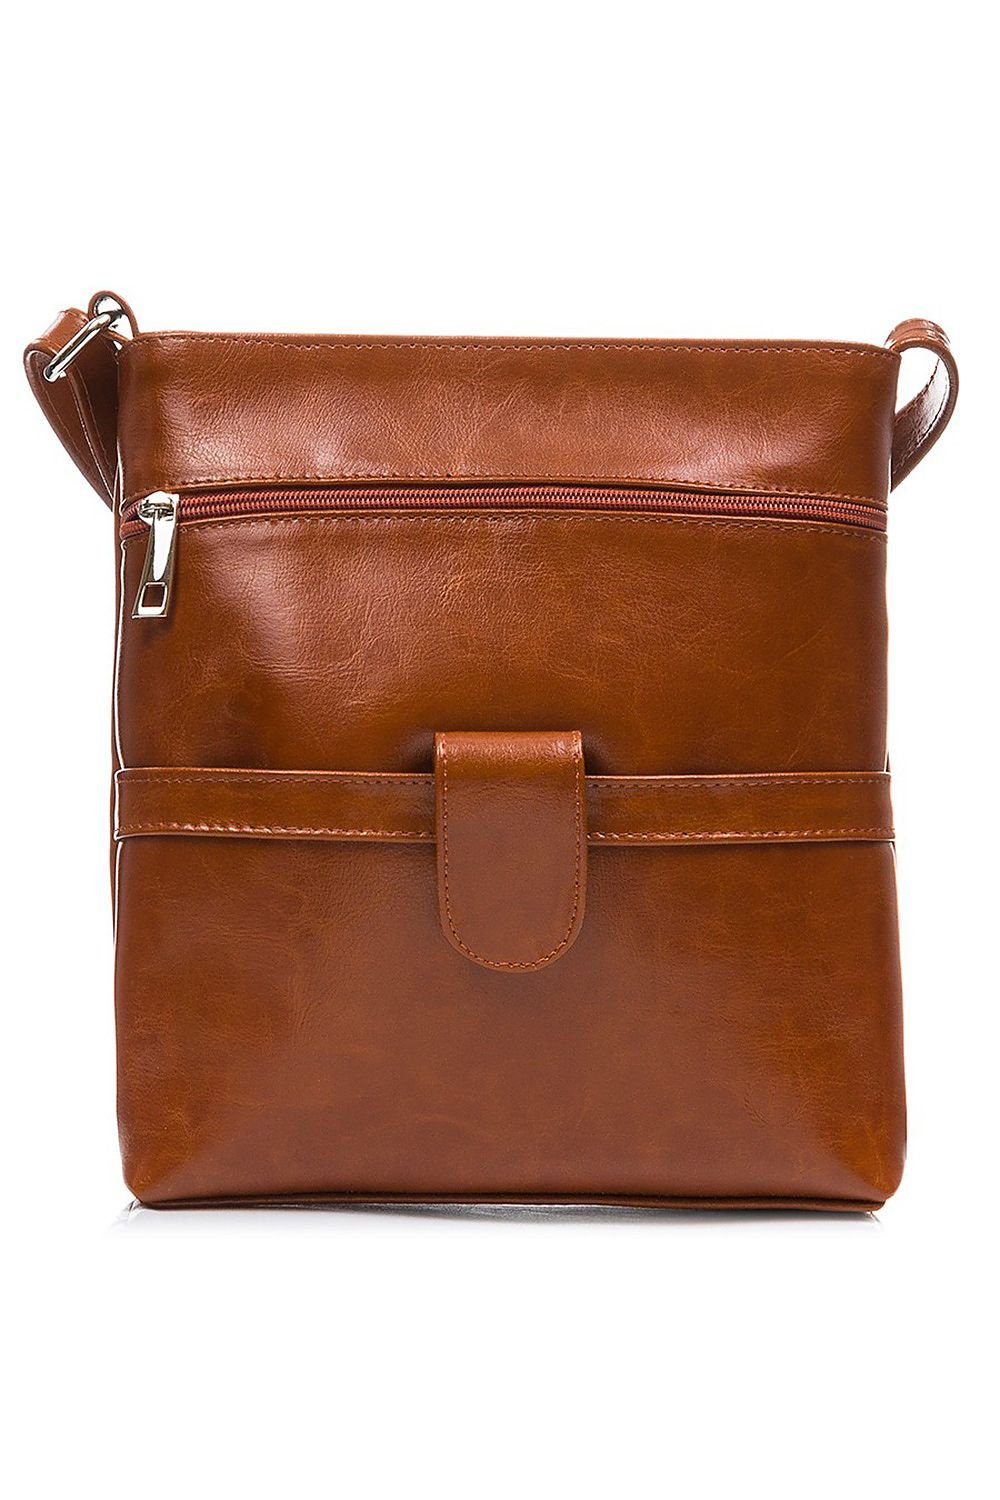 Natural leather bag model 173191 Galanter